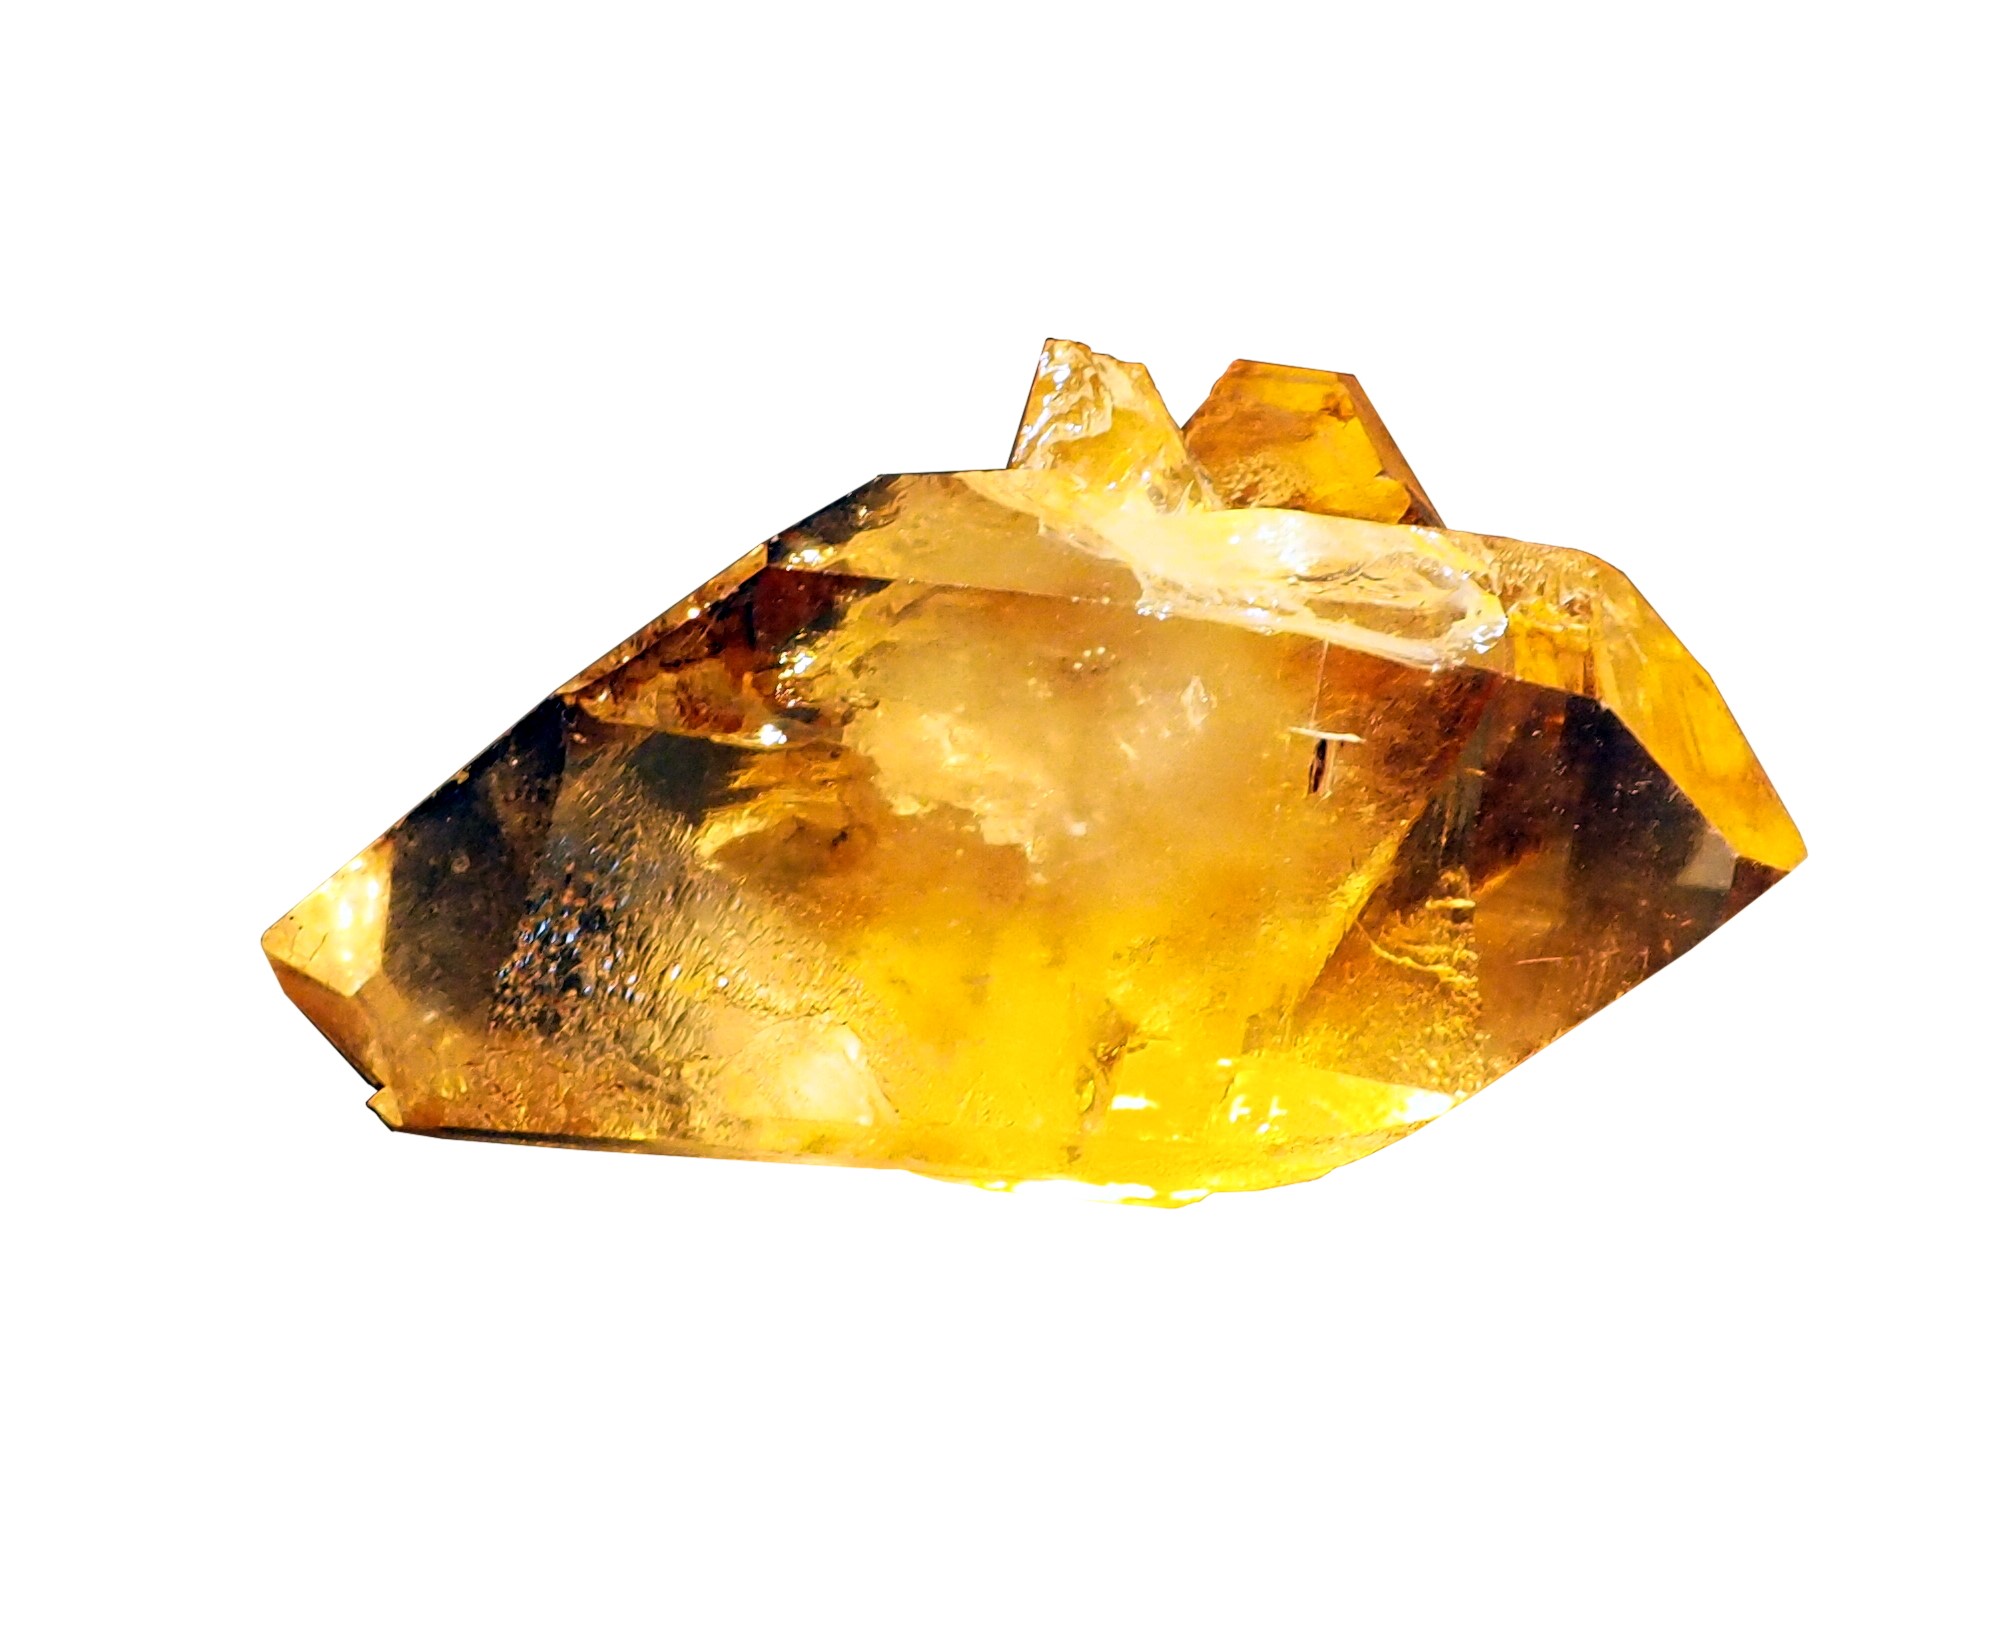 A citrine crystal